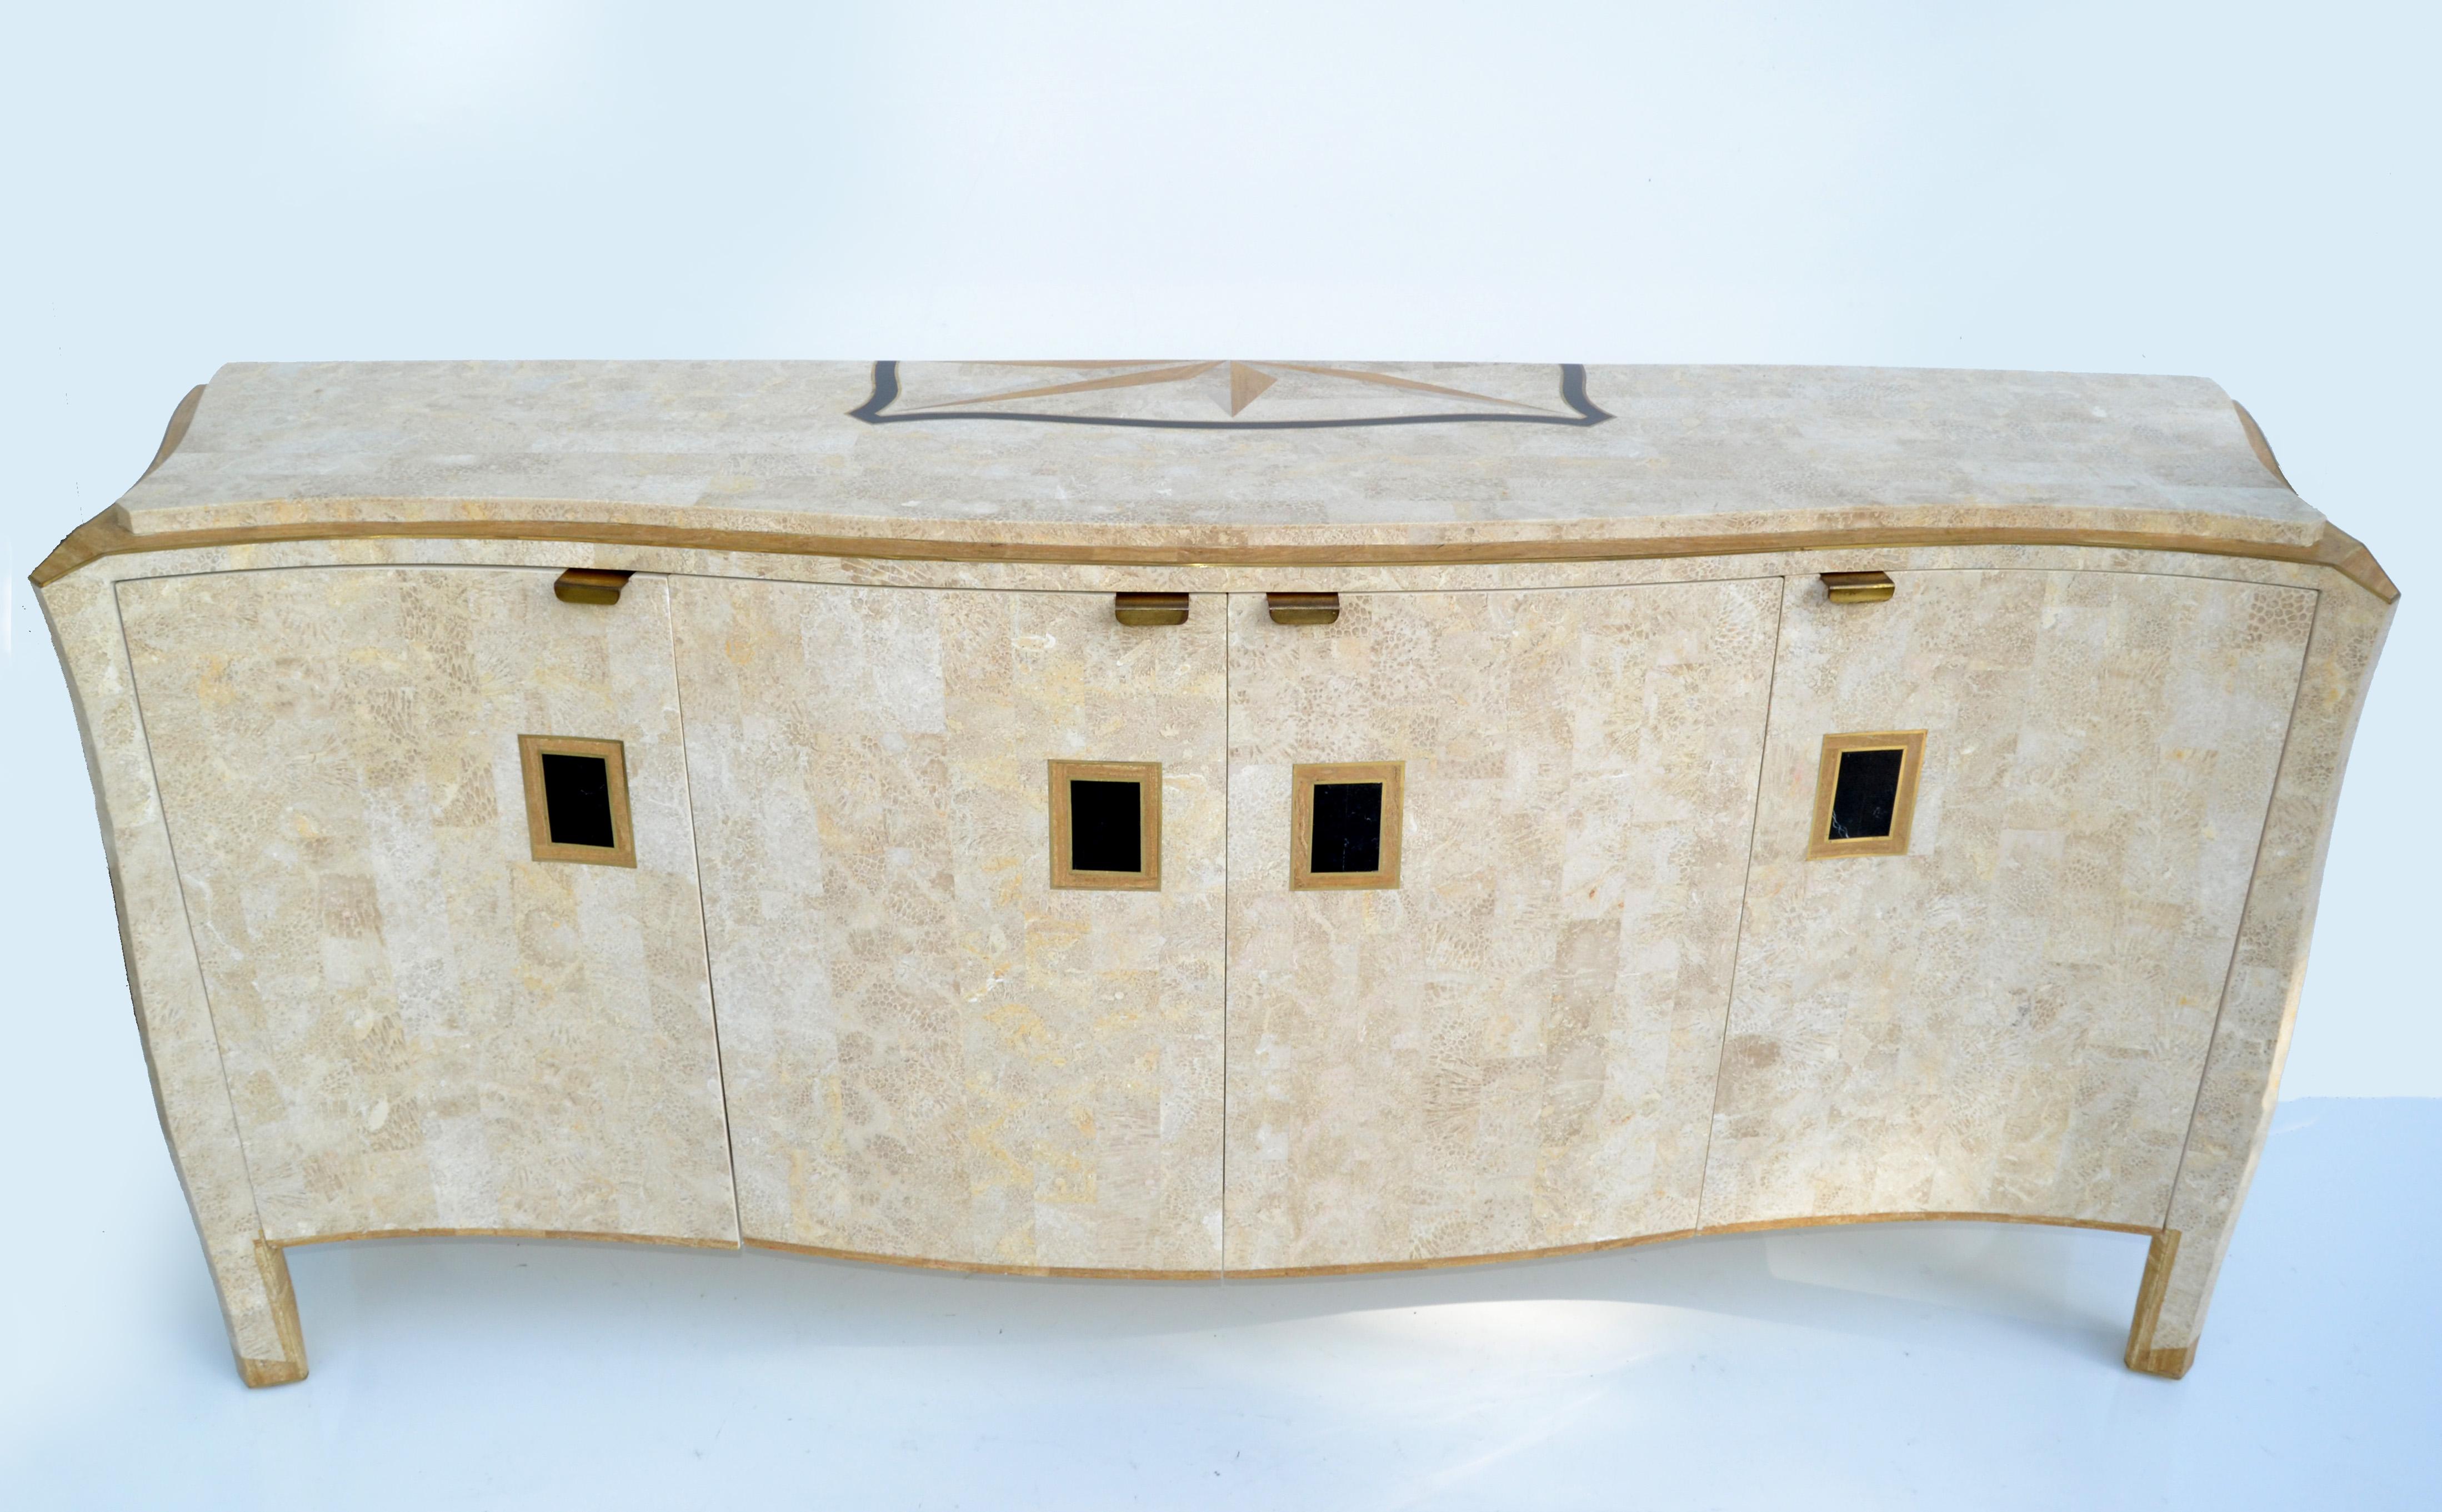 Monumental Credenza, Sideboard, Storage Cabinet by Maitland Smith Mid-Century Modern Design heavy solid crafted and made in the Philippines. 
Fabriqué en pierre tessellée sur du bois avec des poignées et des bordures en laiton ainsi que des